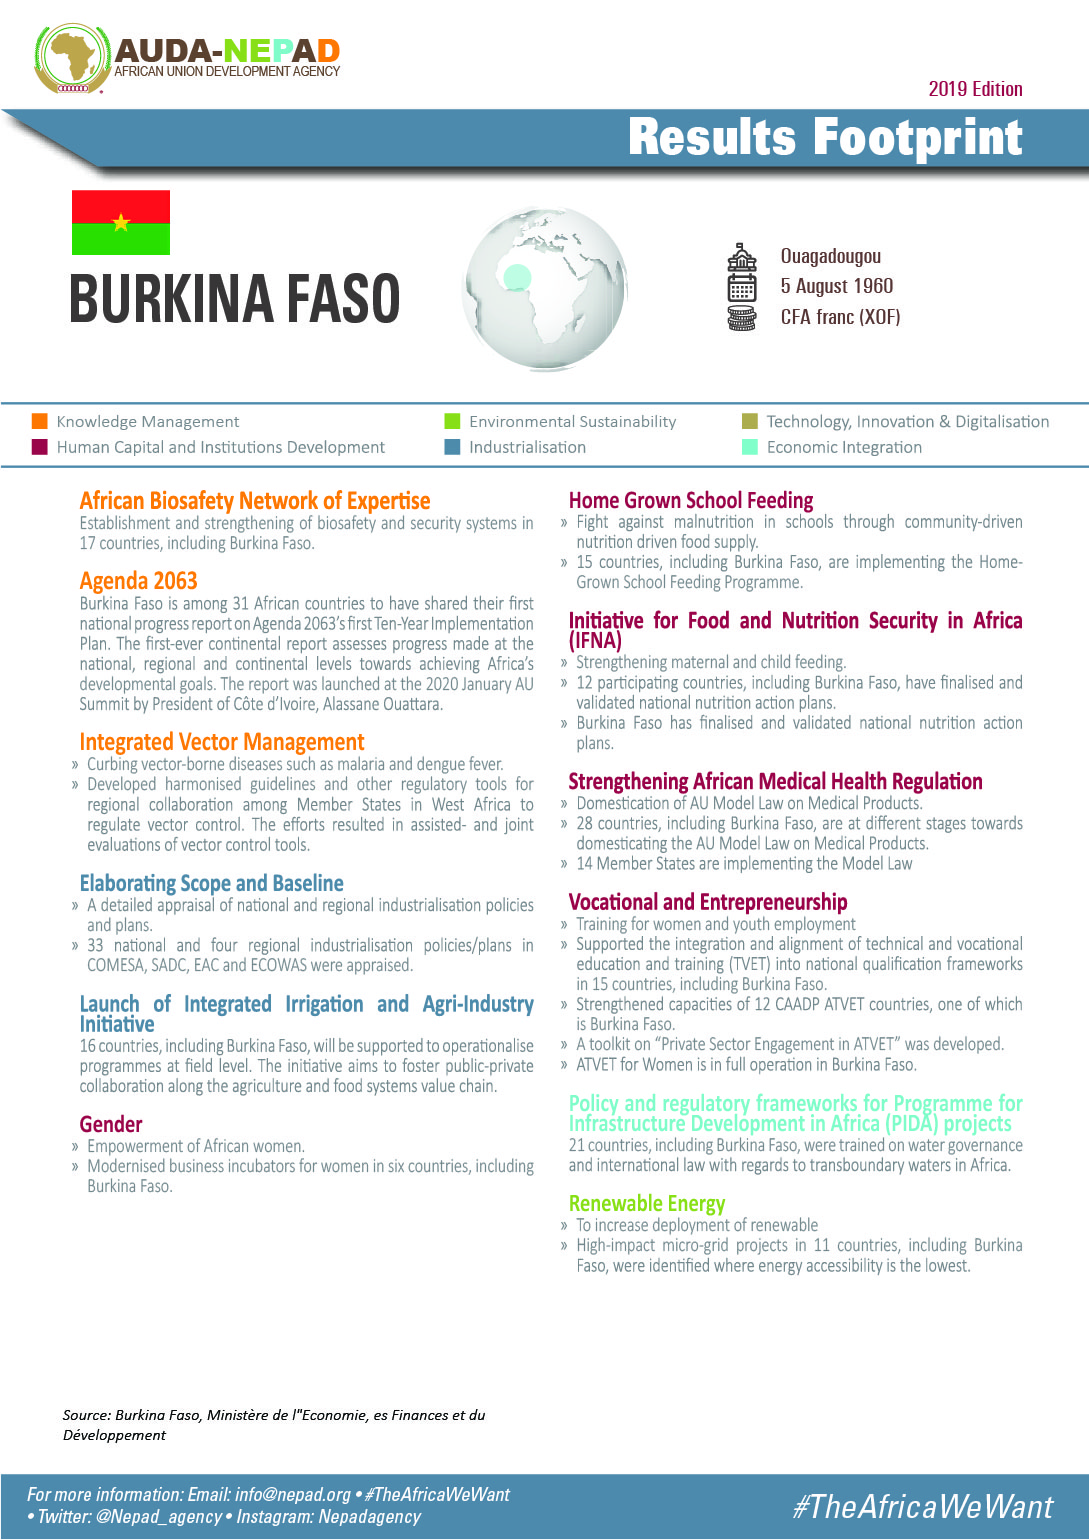 2019 AUDA-NEPAD Footprint: Country Profiles: Burkina Faso